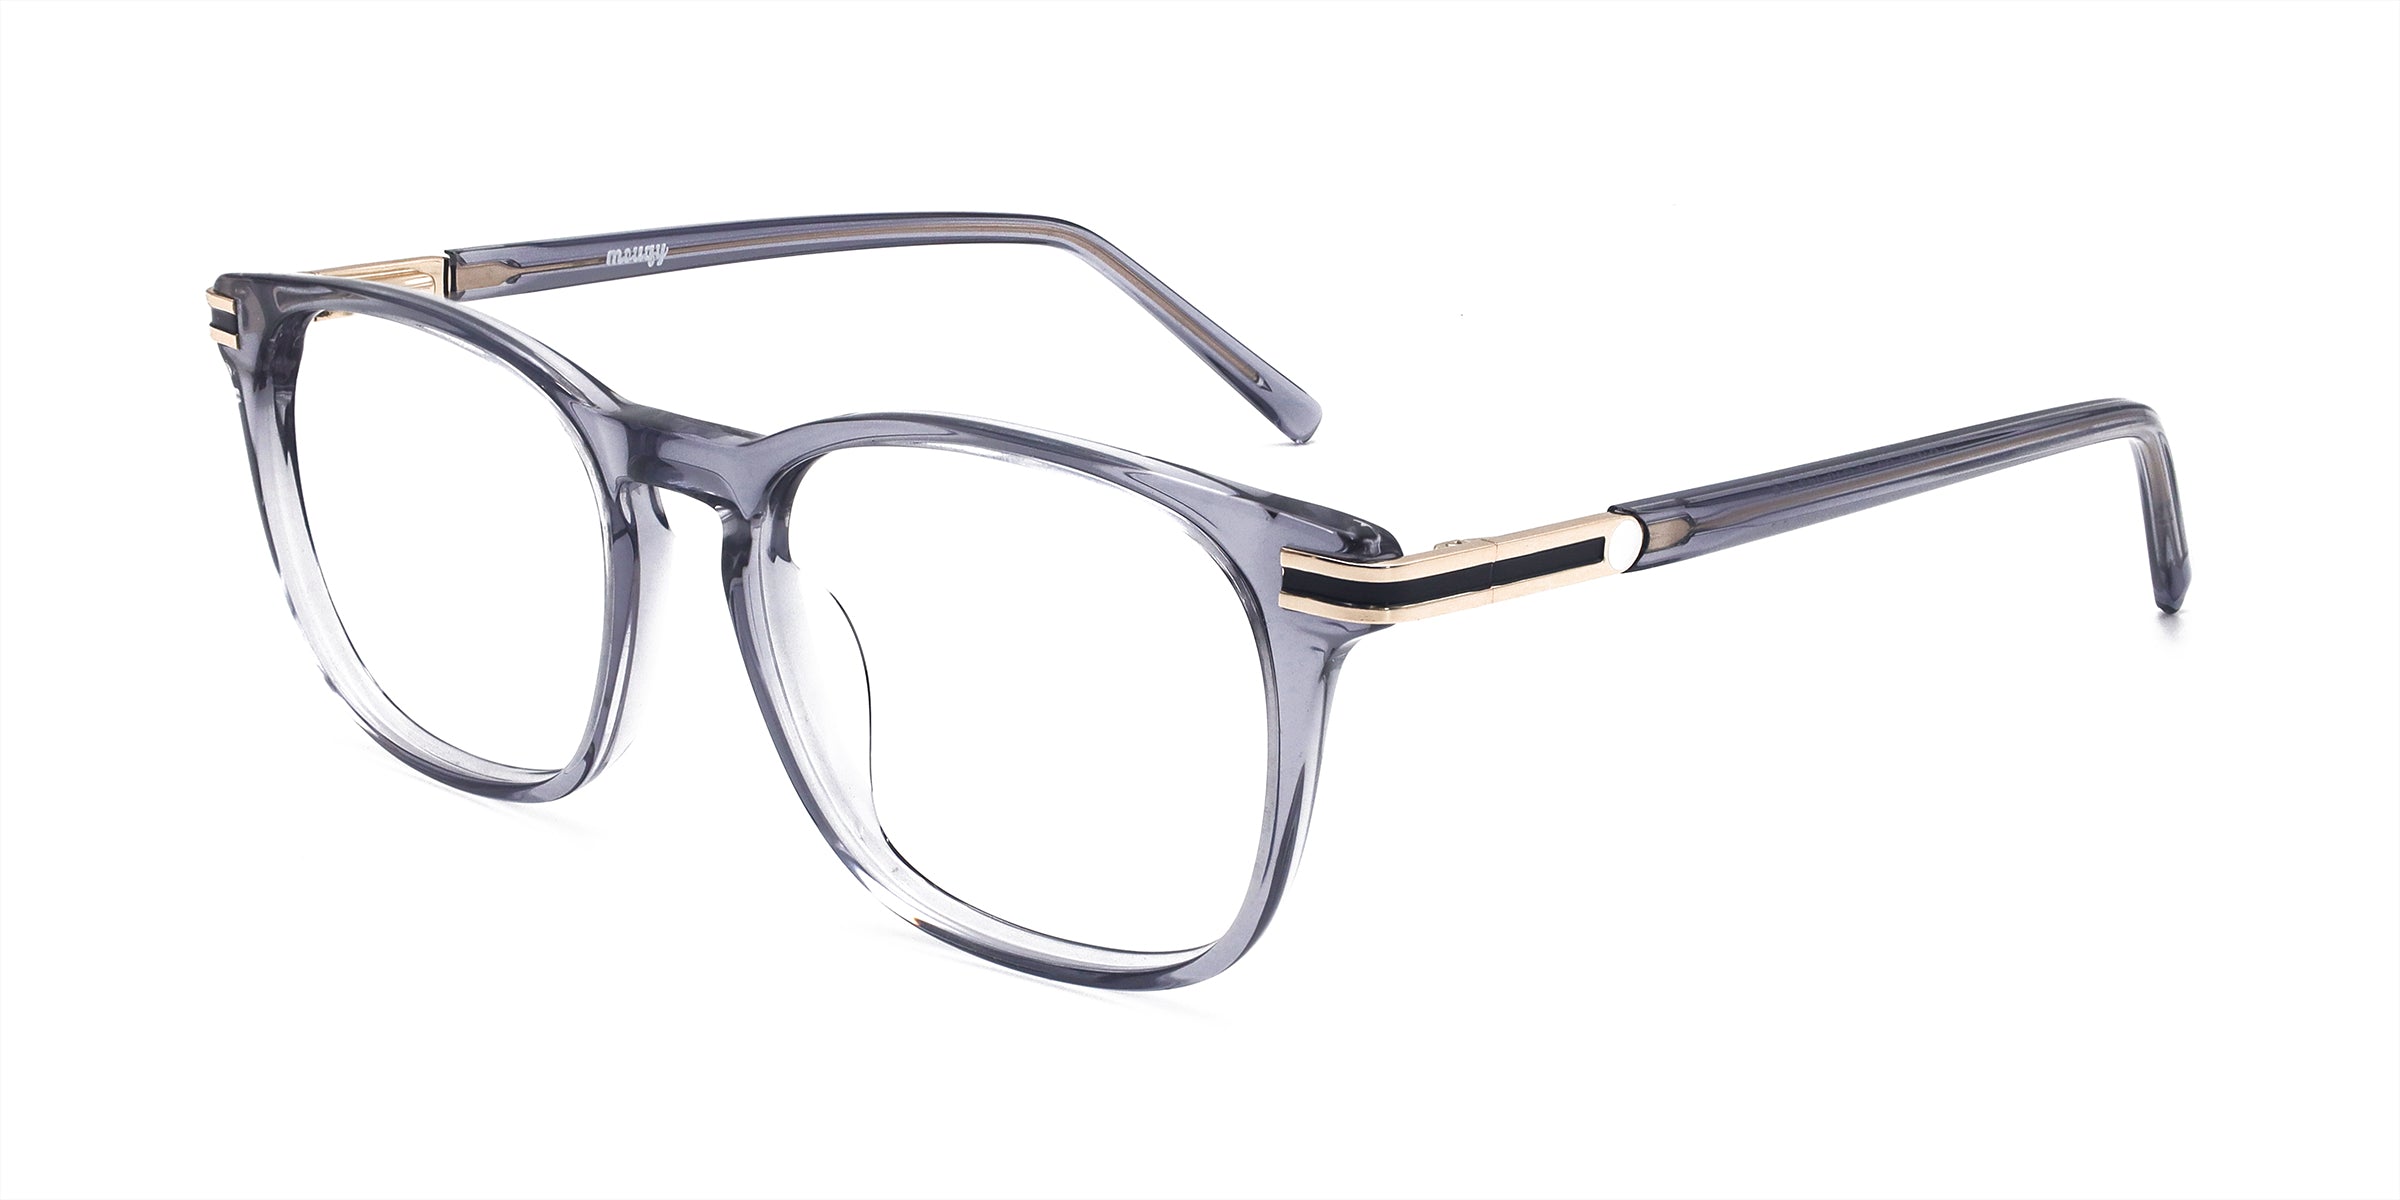 Nori Square Transparent Gray Eyeglasses - Mouqy Eyewear